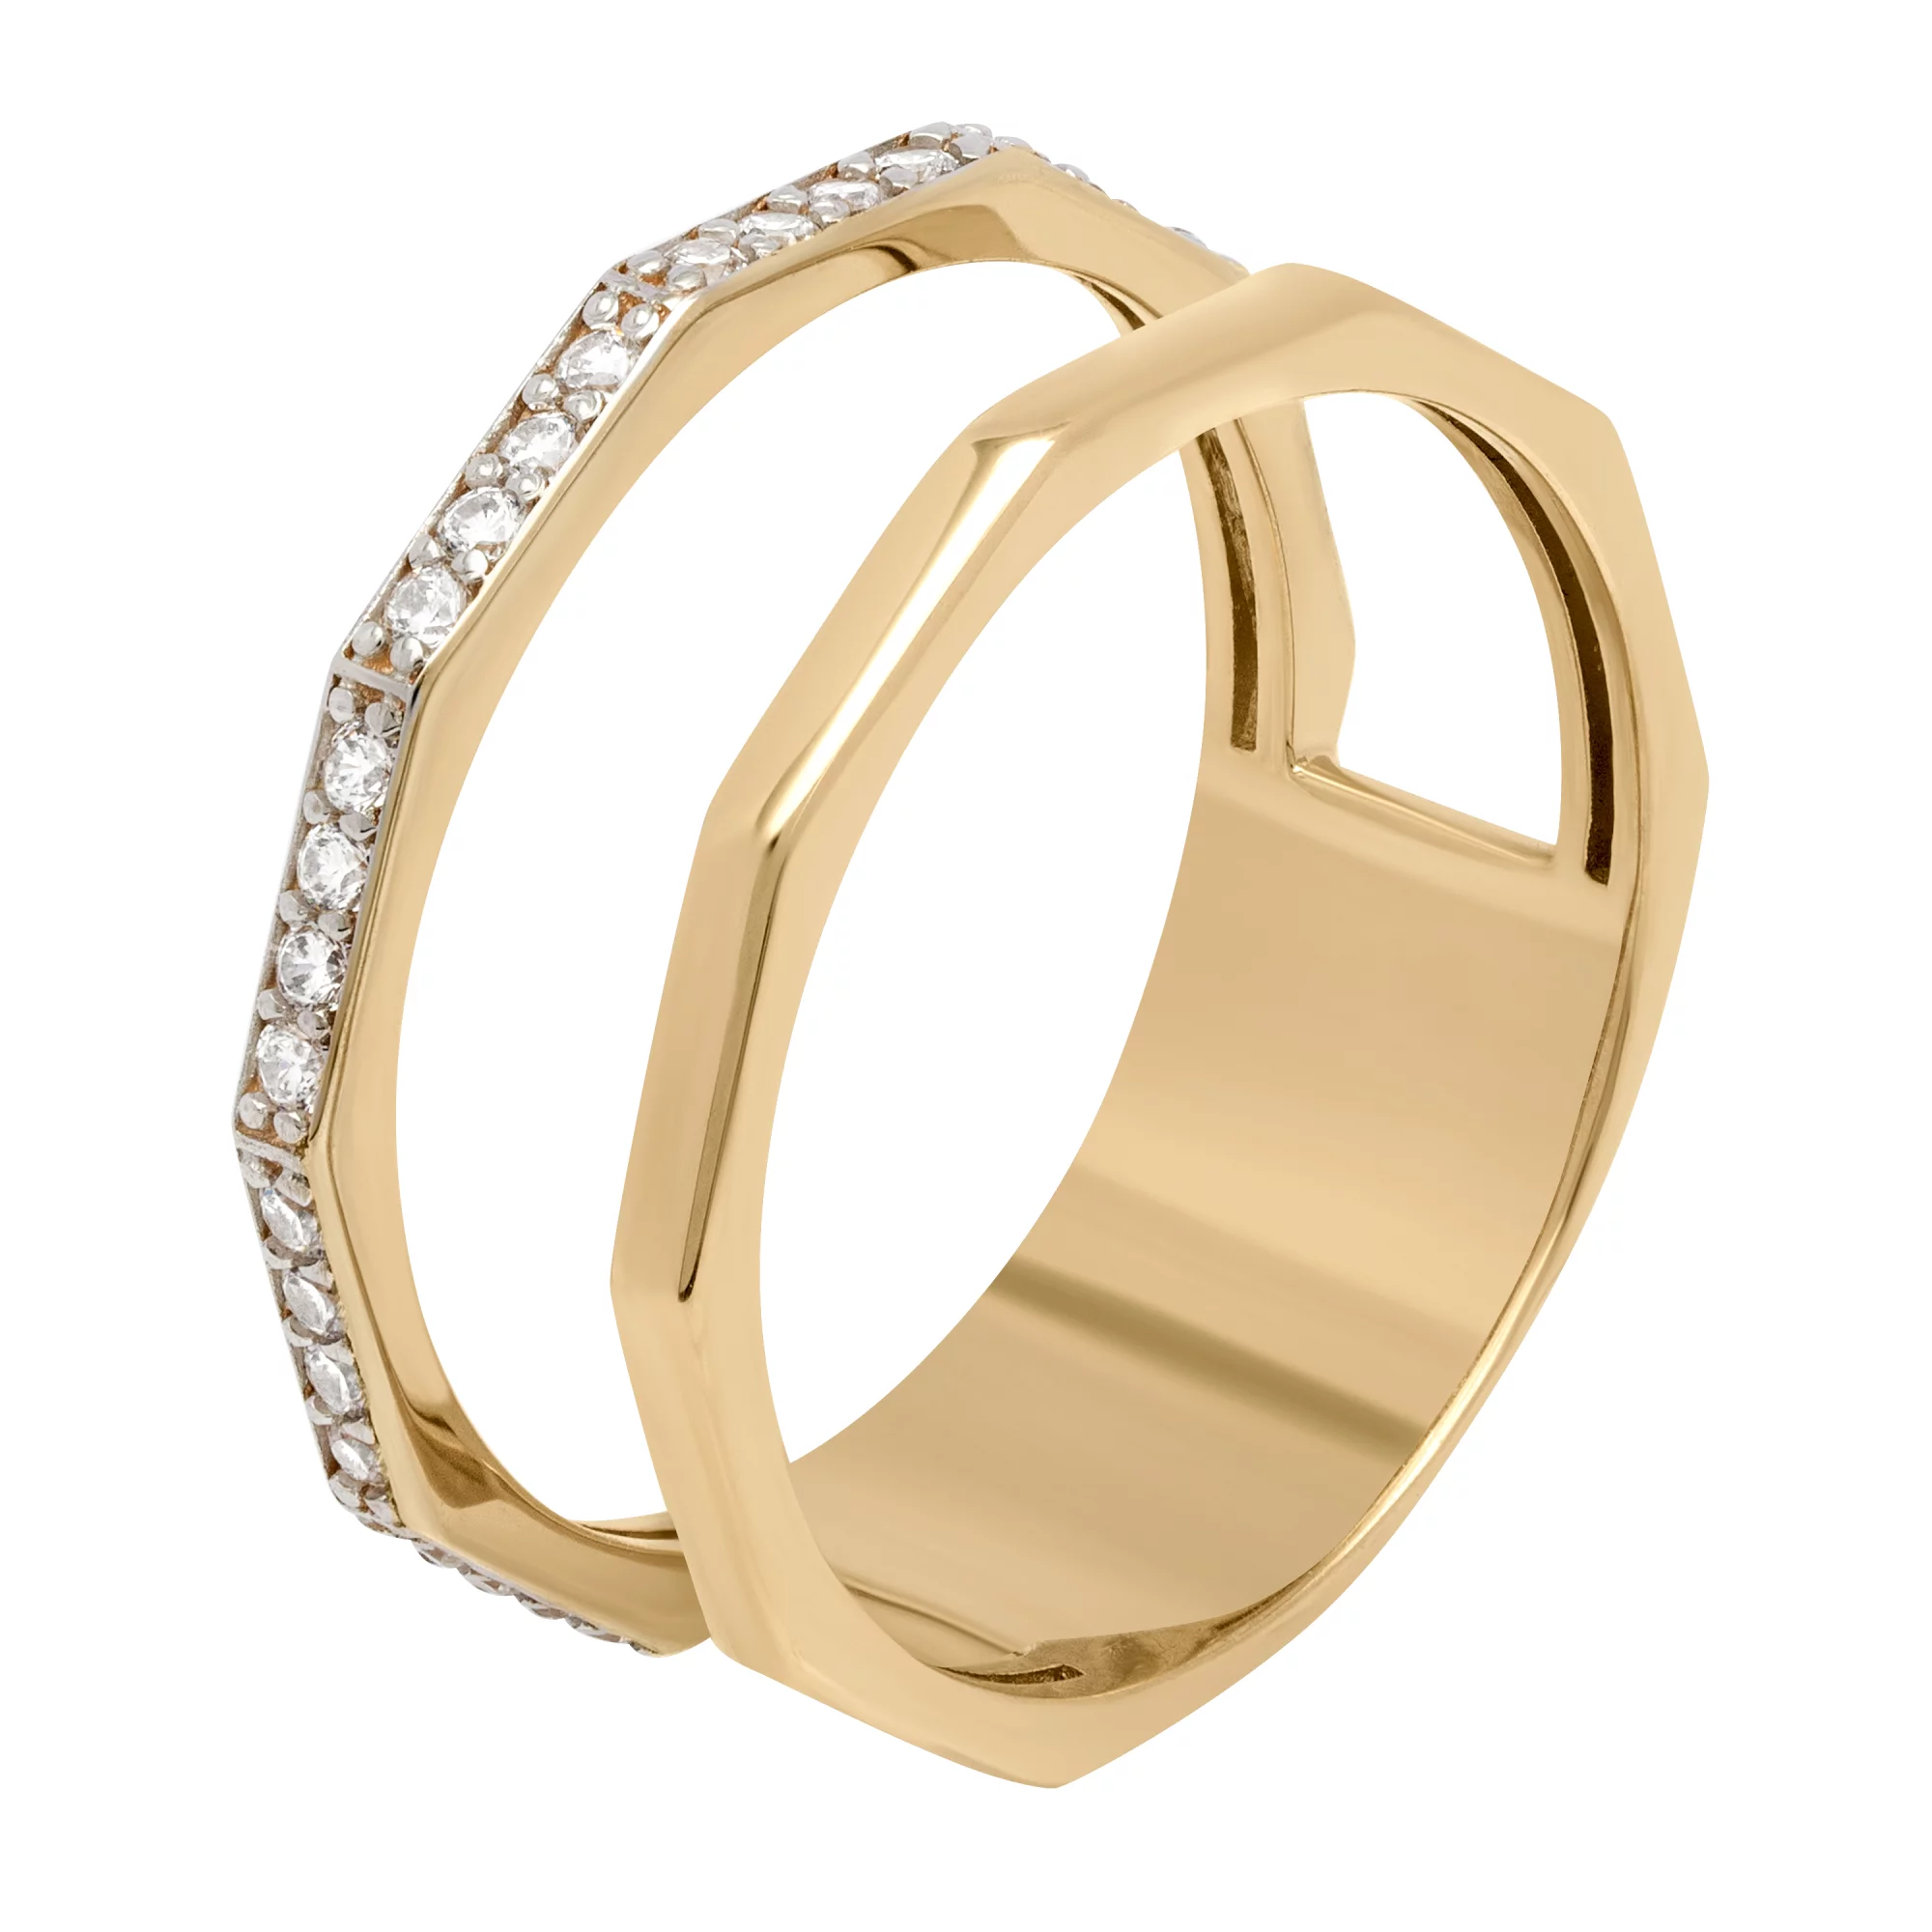 Двойное кольцо с дорожкой фианитов - 1690075 – изображение 1